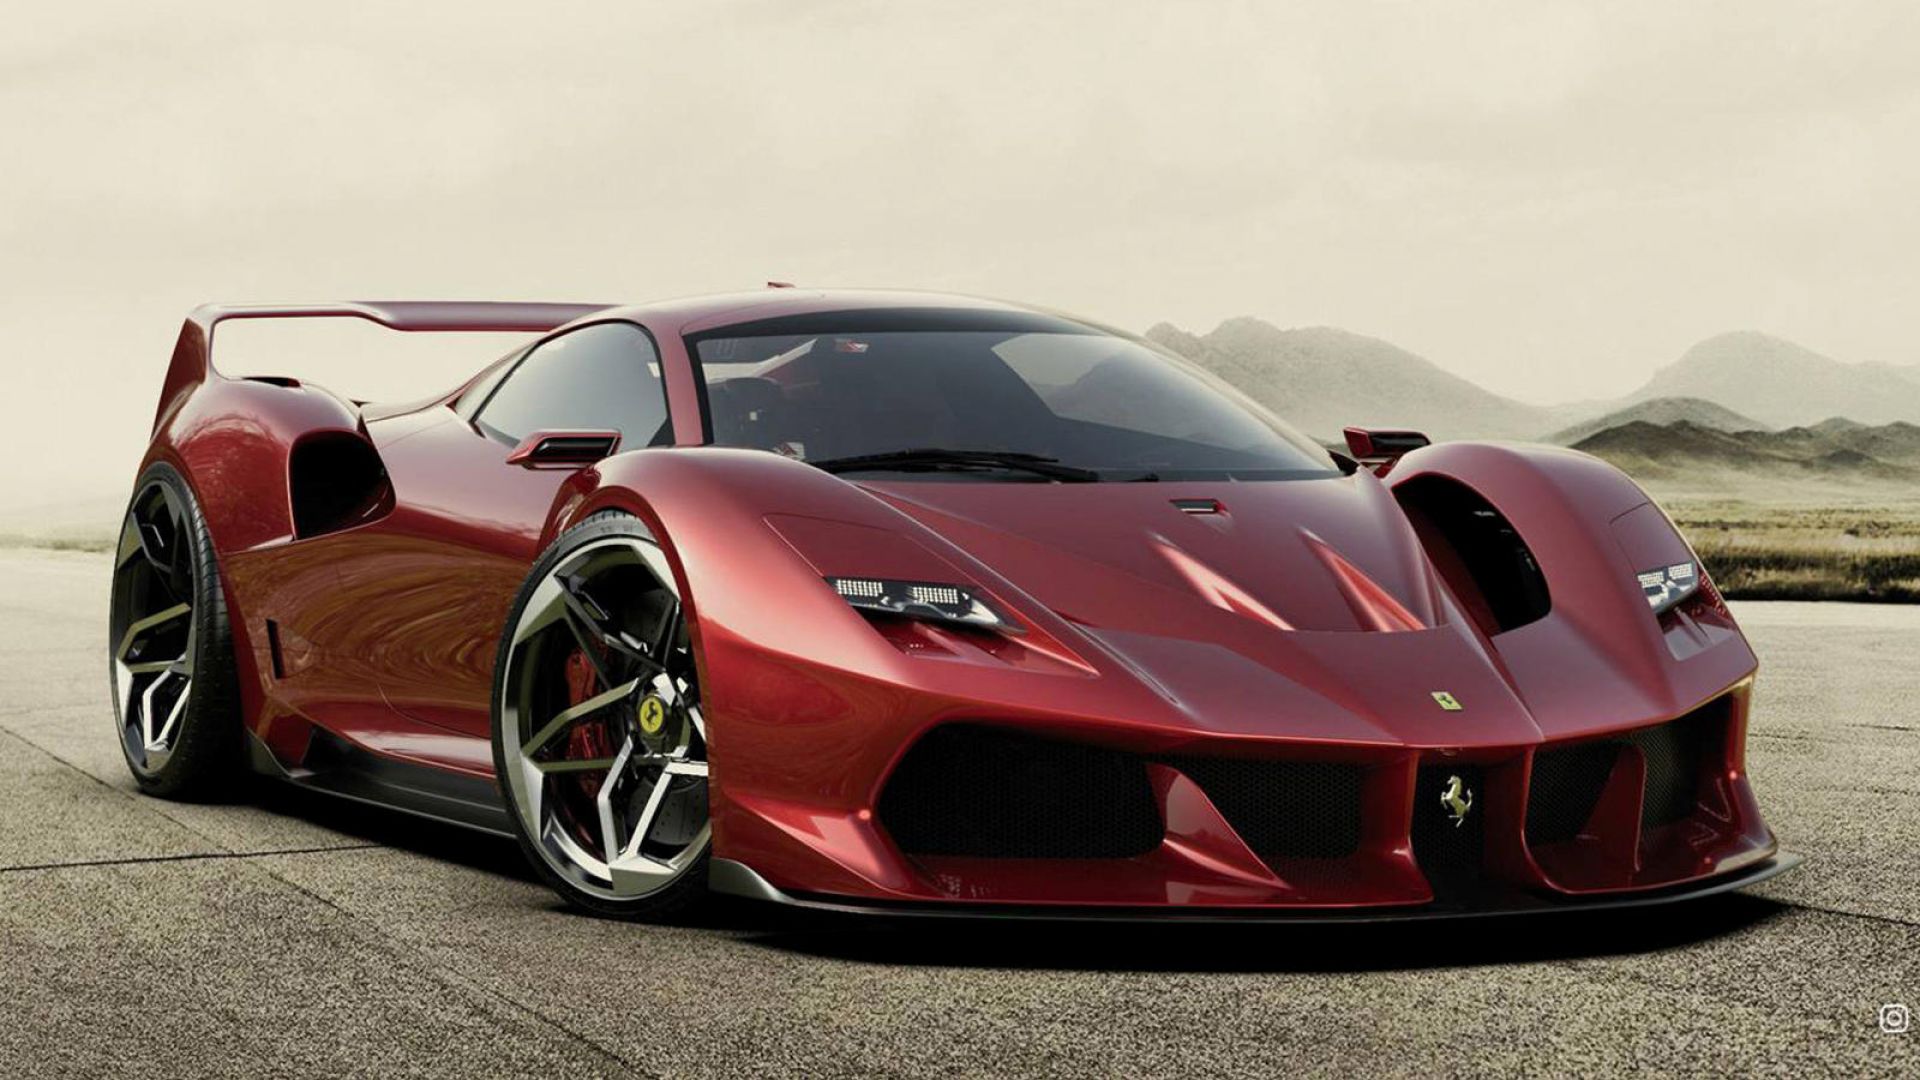 Ferrari: in arrivo l’erede della F40? Le ipotesi F8 e SF90 - MotorBox